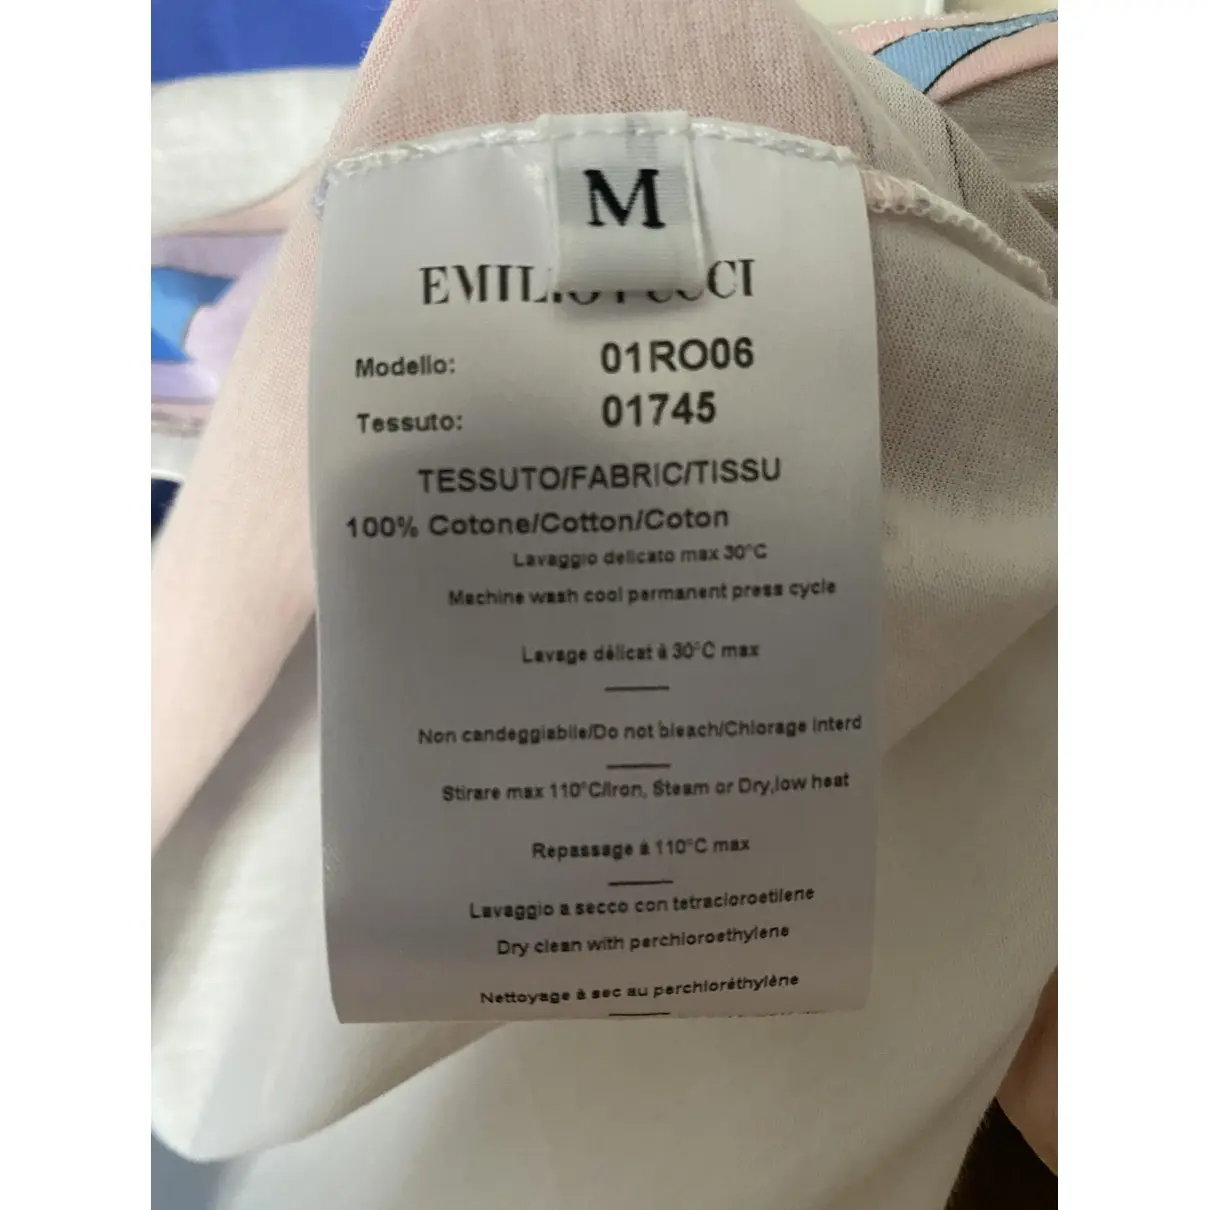 Buy Emilio Pucci Multicolour Cotton Top online